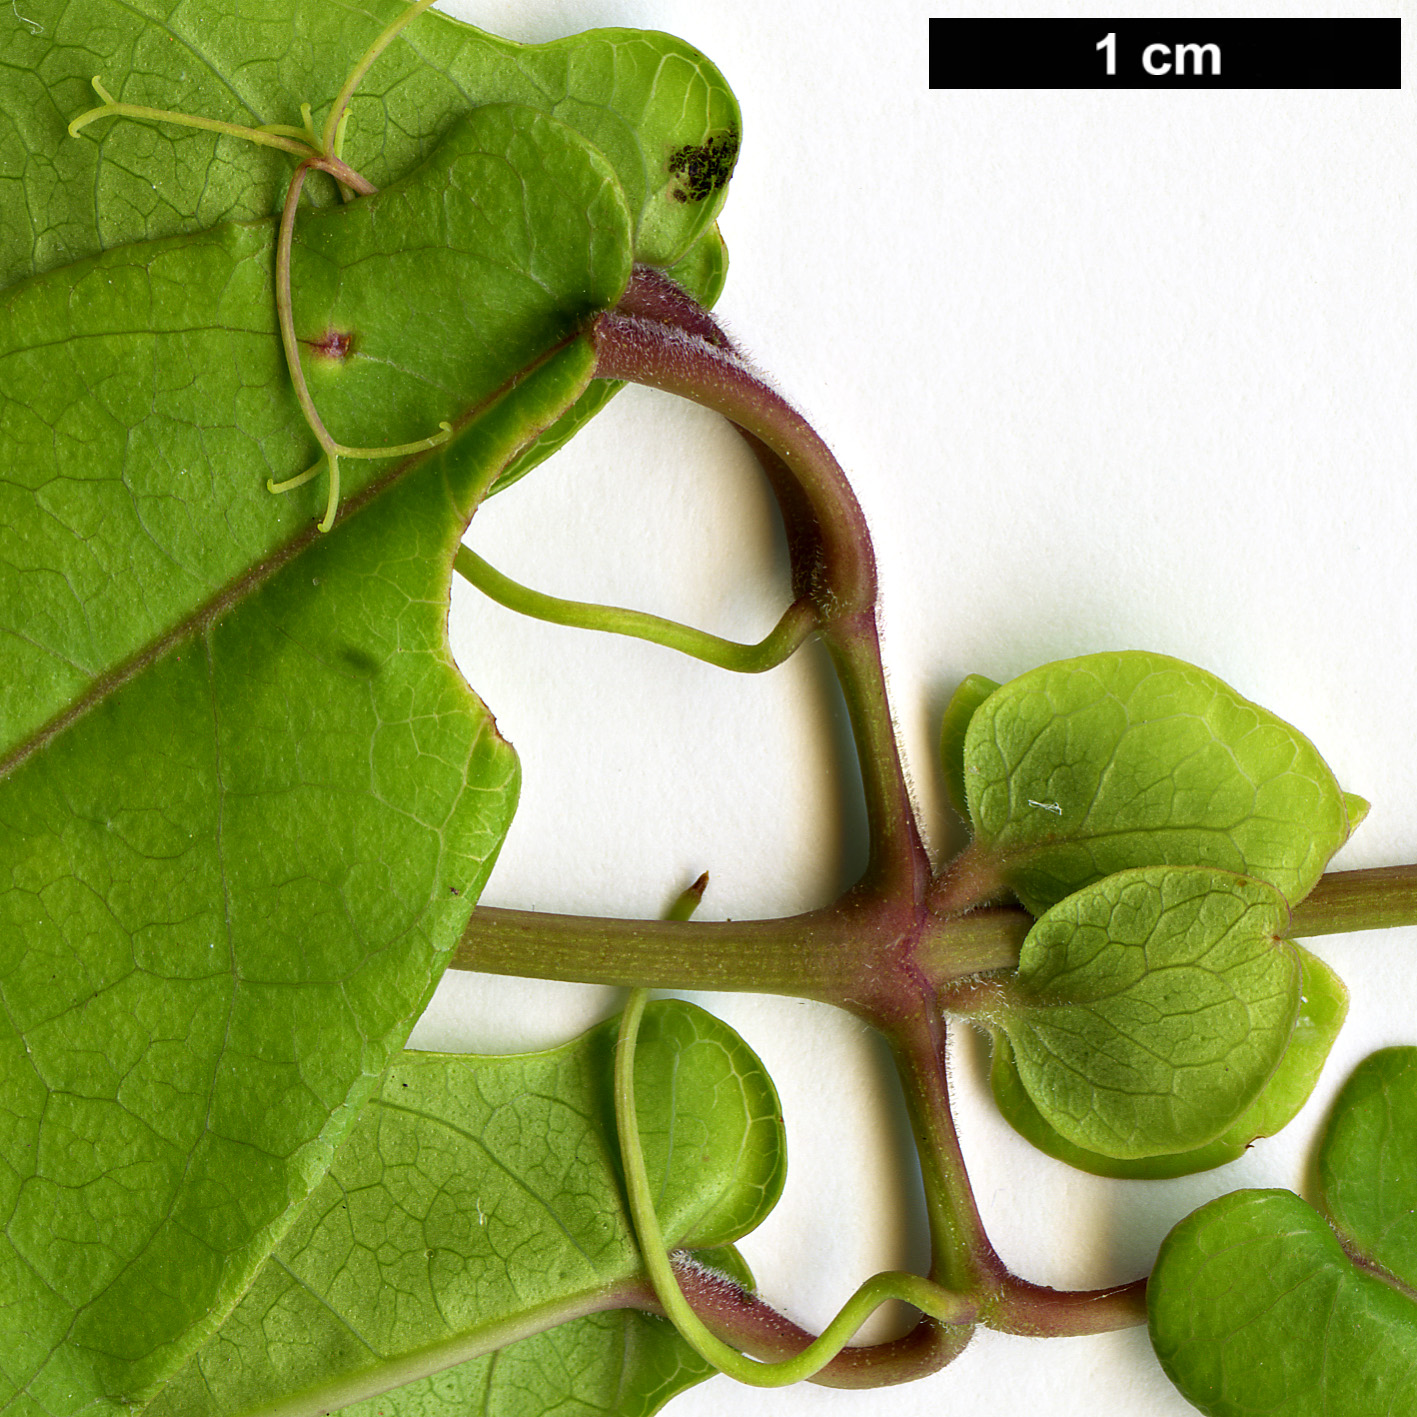 High resolution image: Family: Bignoniaceae - Genus: Bignonia - Taxon: capreolata